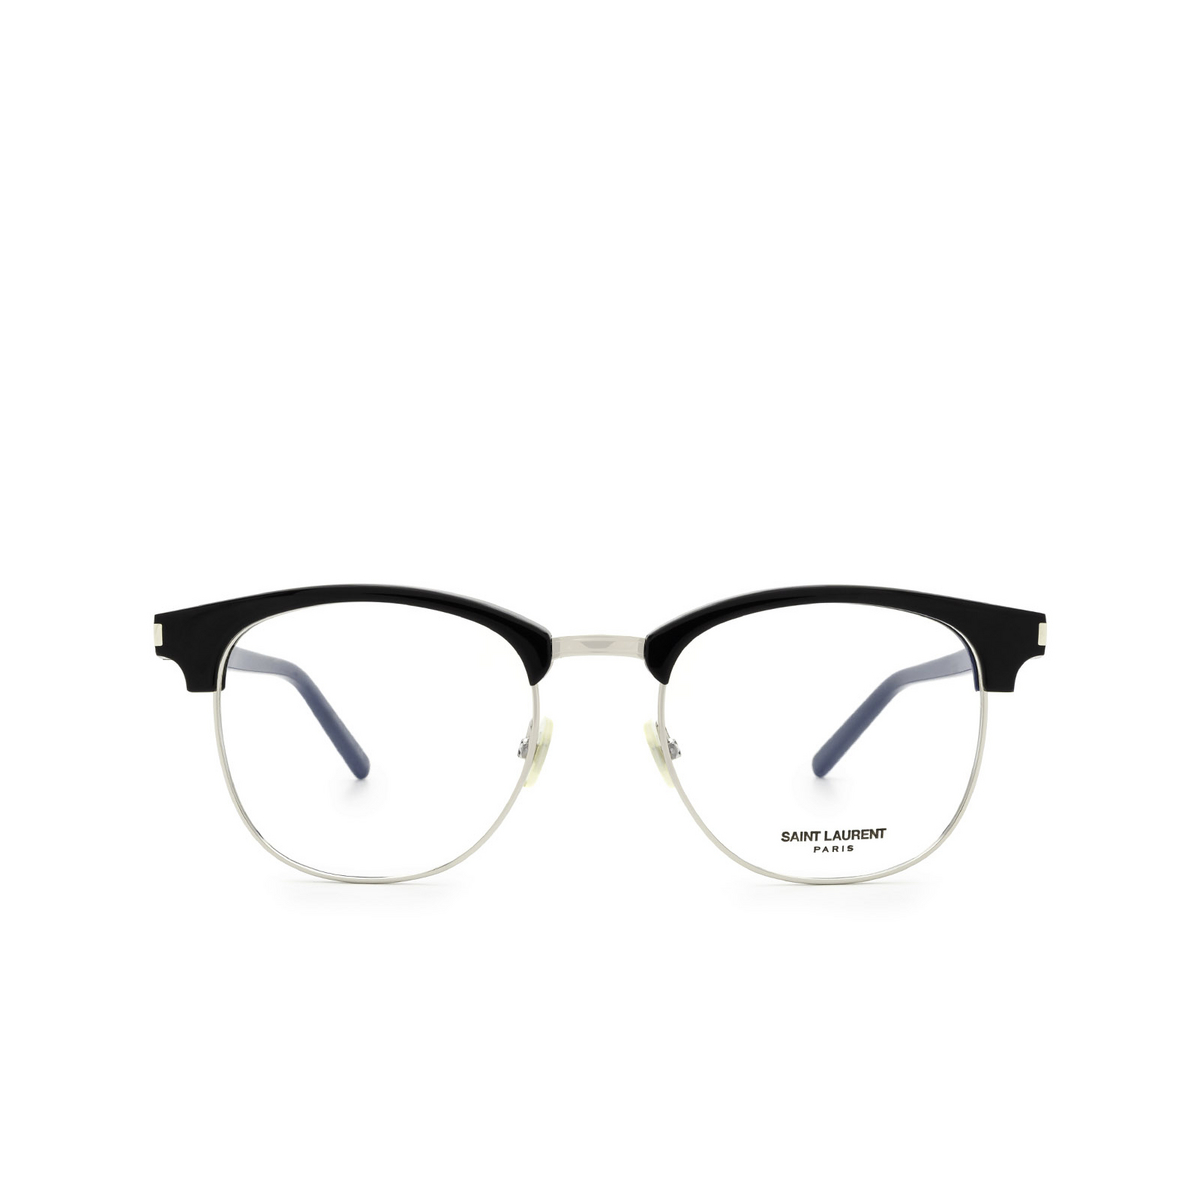 Saint Laurent® Square Eyeglasses: SL 104 color Black 001 - 1/3.